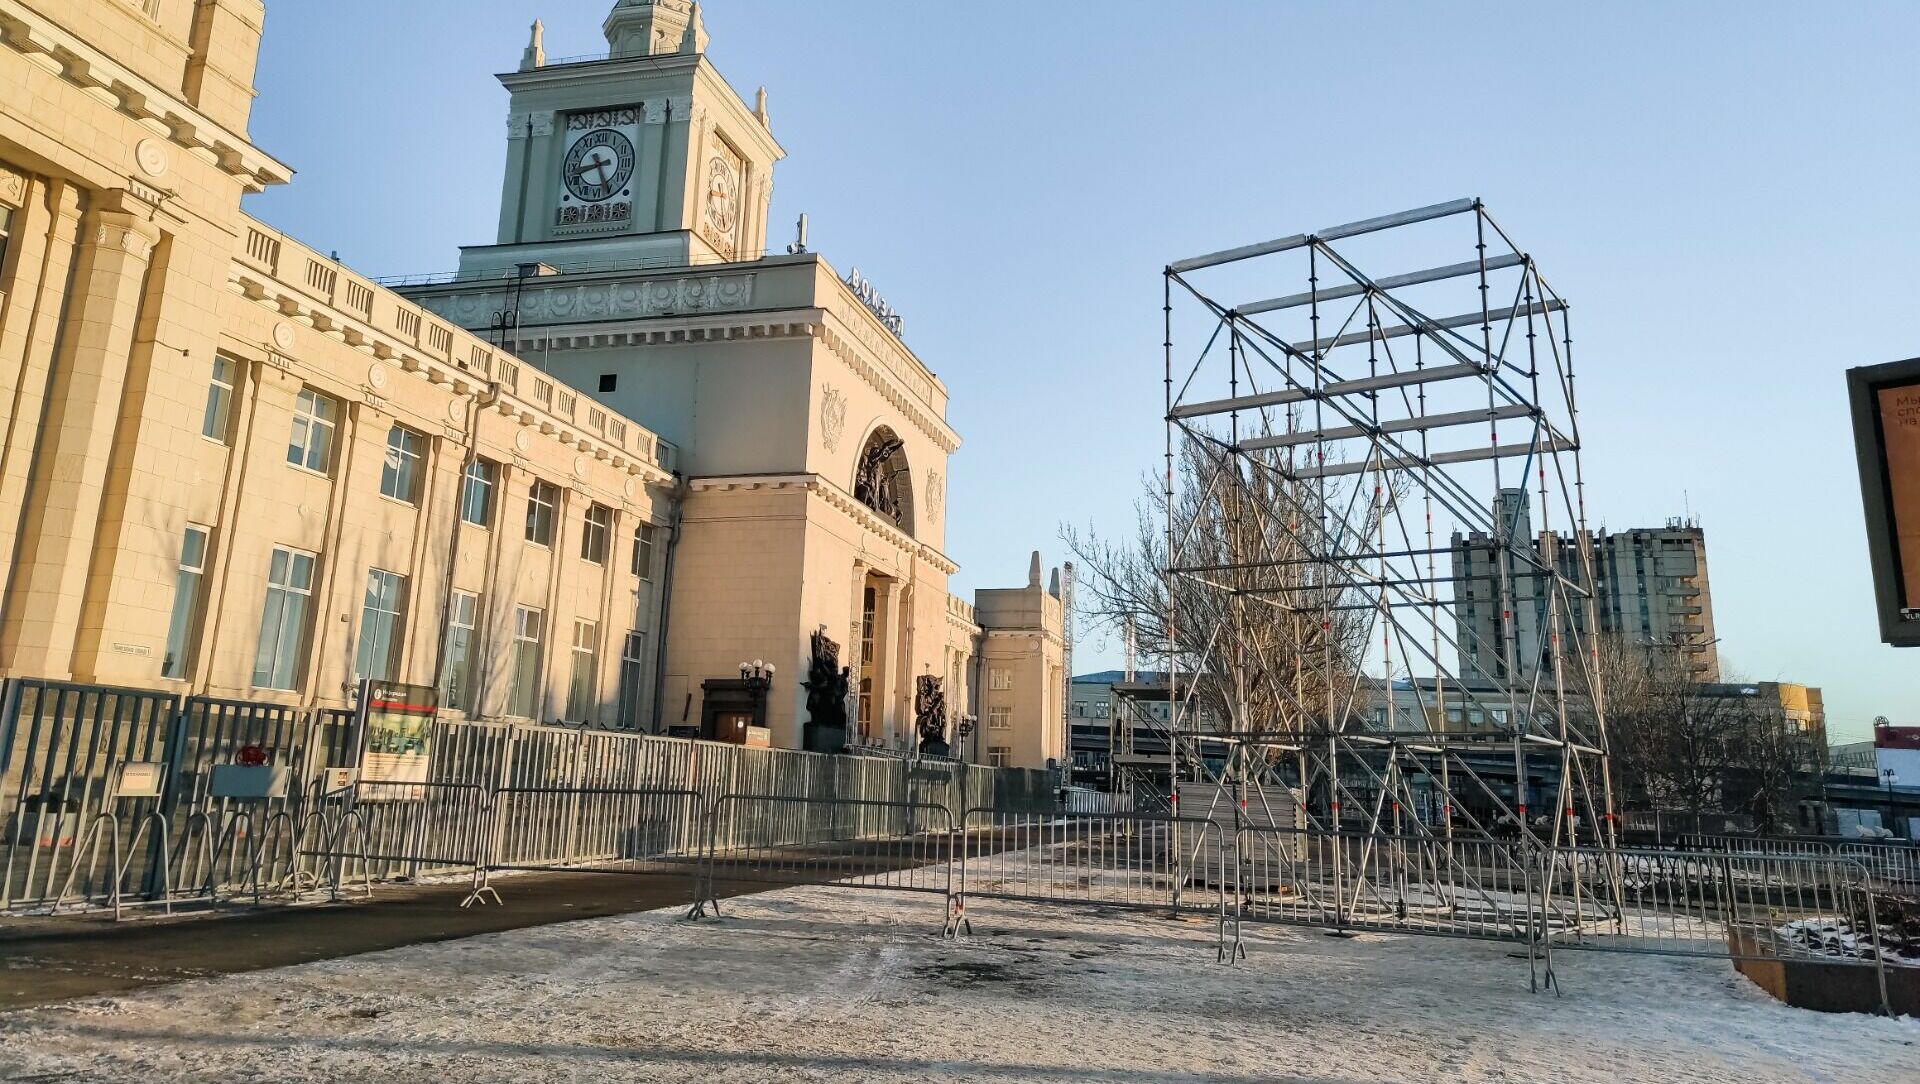 Баррикады из стройматериалов и палатки появились перед вокзалом в Волгограде